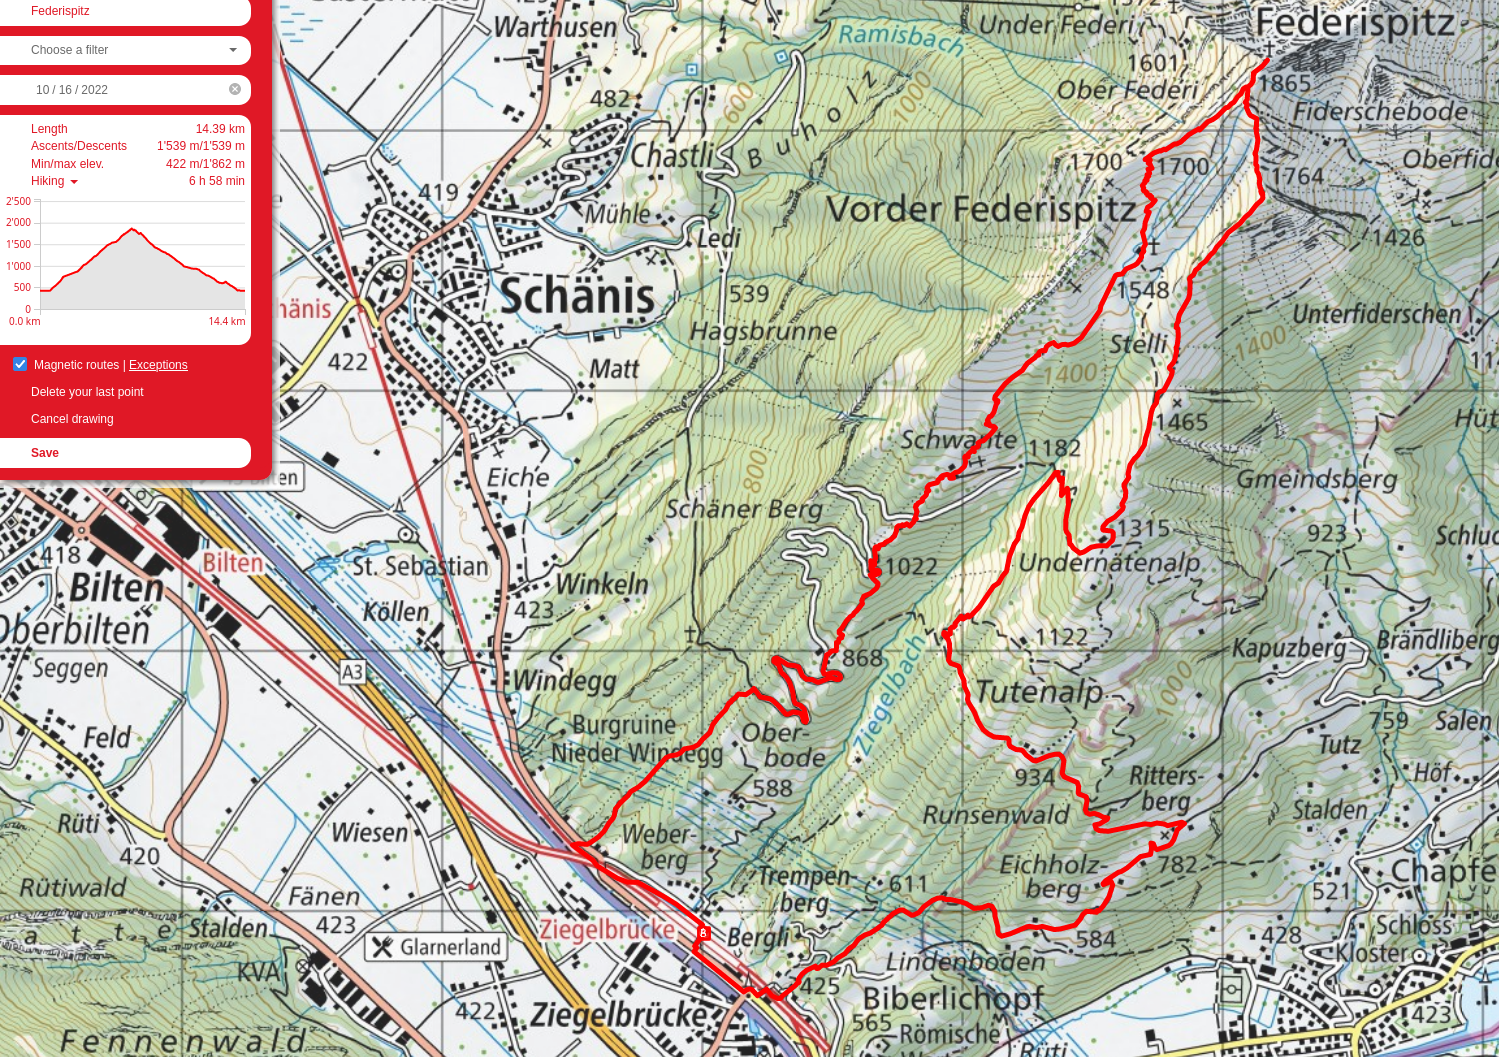 Federispitz route map